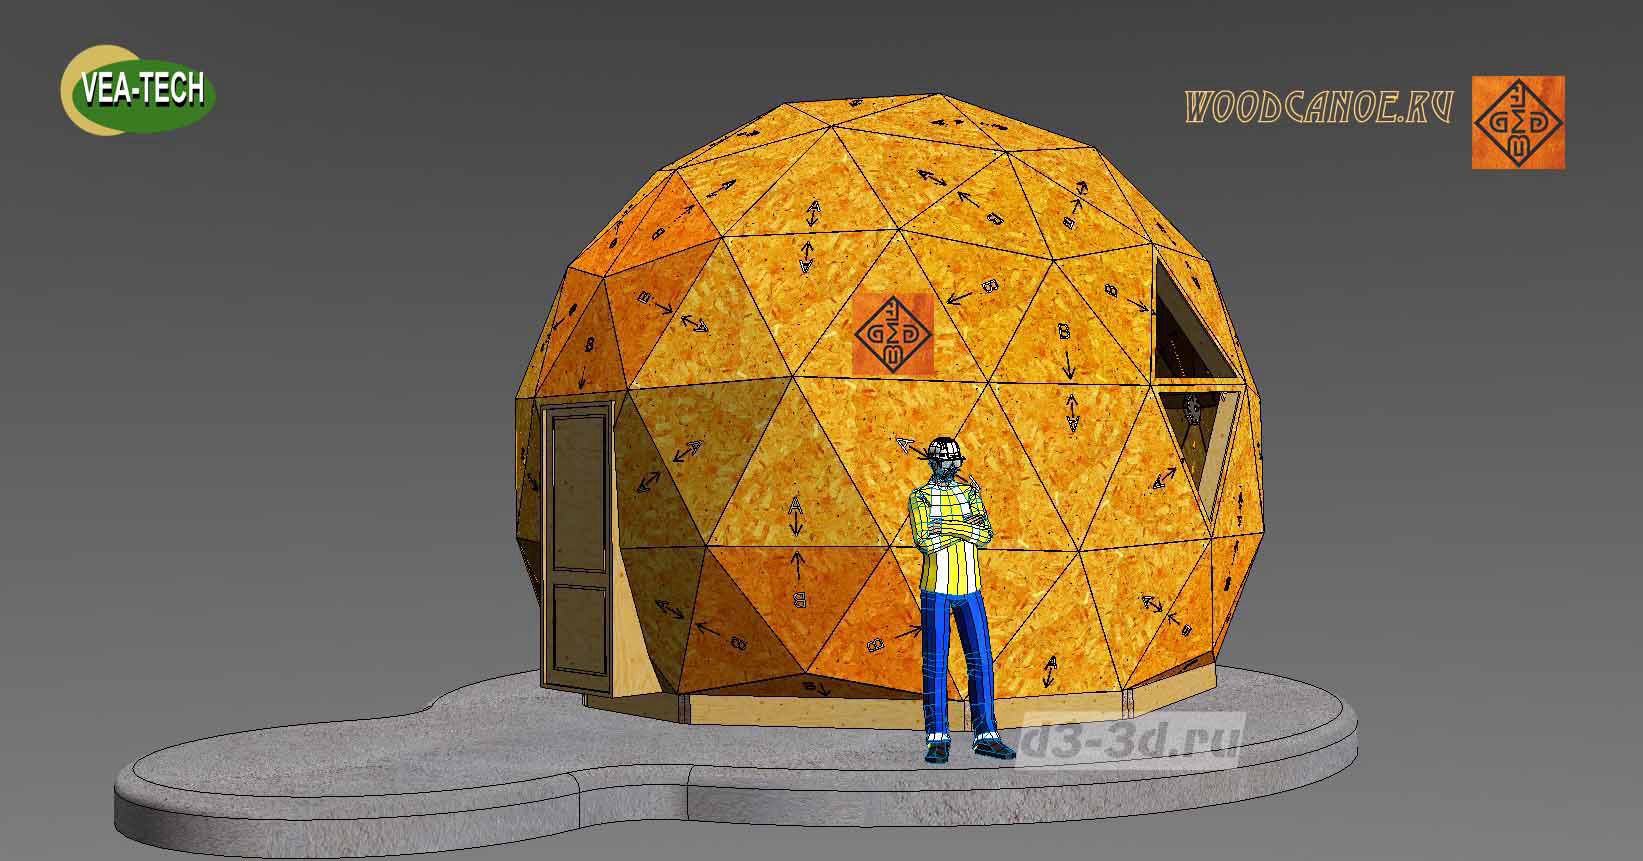 Купольные дома — строительство/купить круглый купольный/сфера дом | Киев, фото, проект